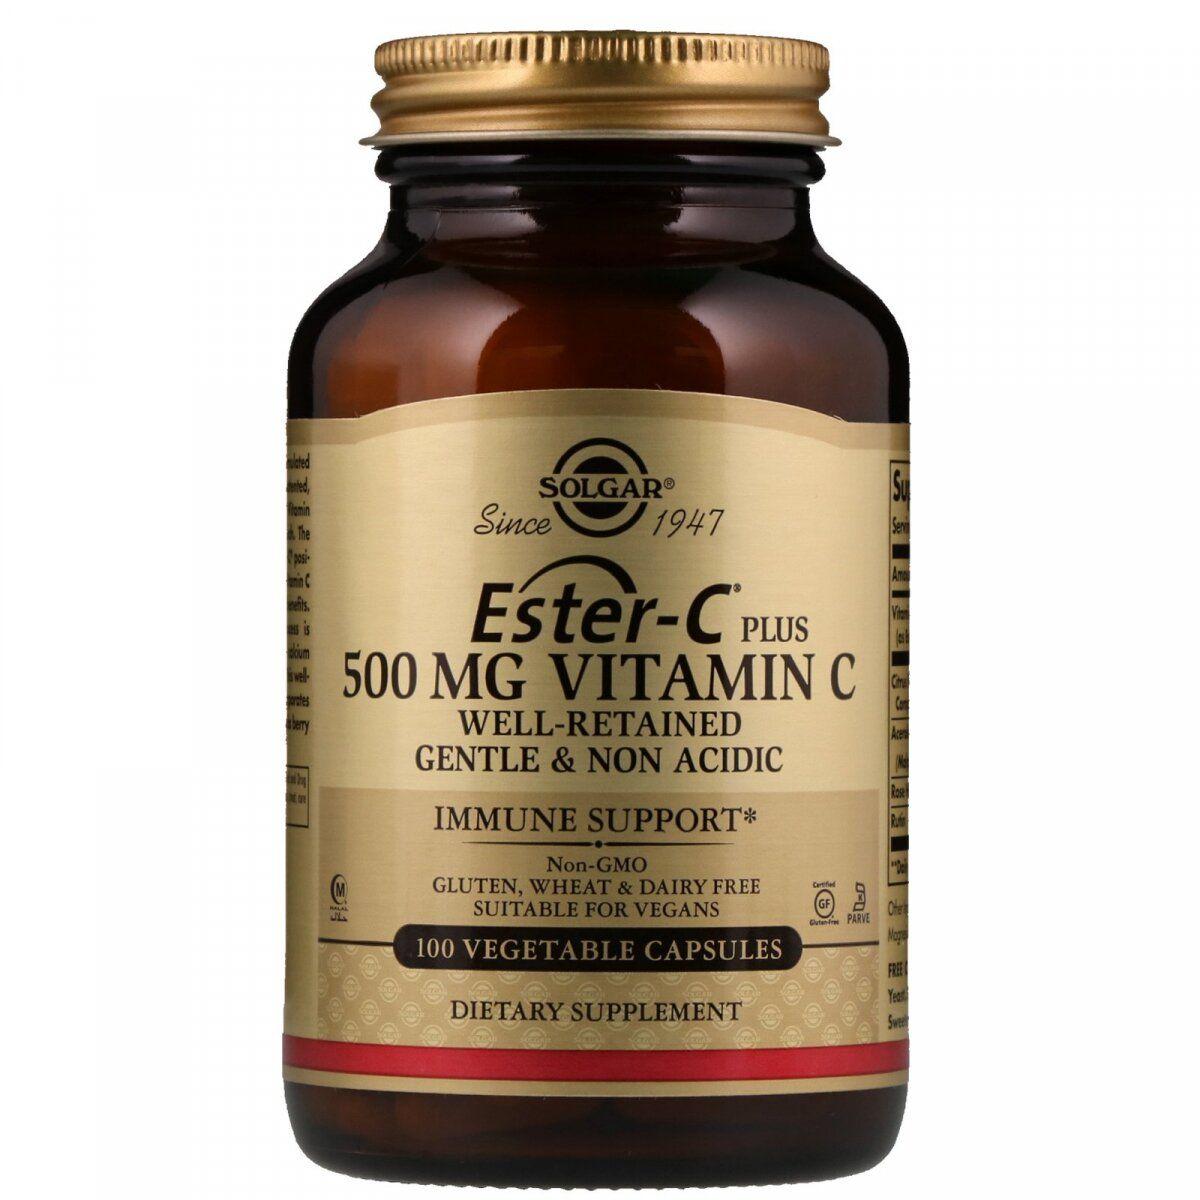 Solgar Ester-C Plus Vitamin C 500 mg 100 VCaps,  мл, Solgar. Витамины и минералы. Поддержание здоровья Укрепление иммунитета 